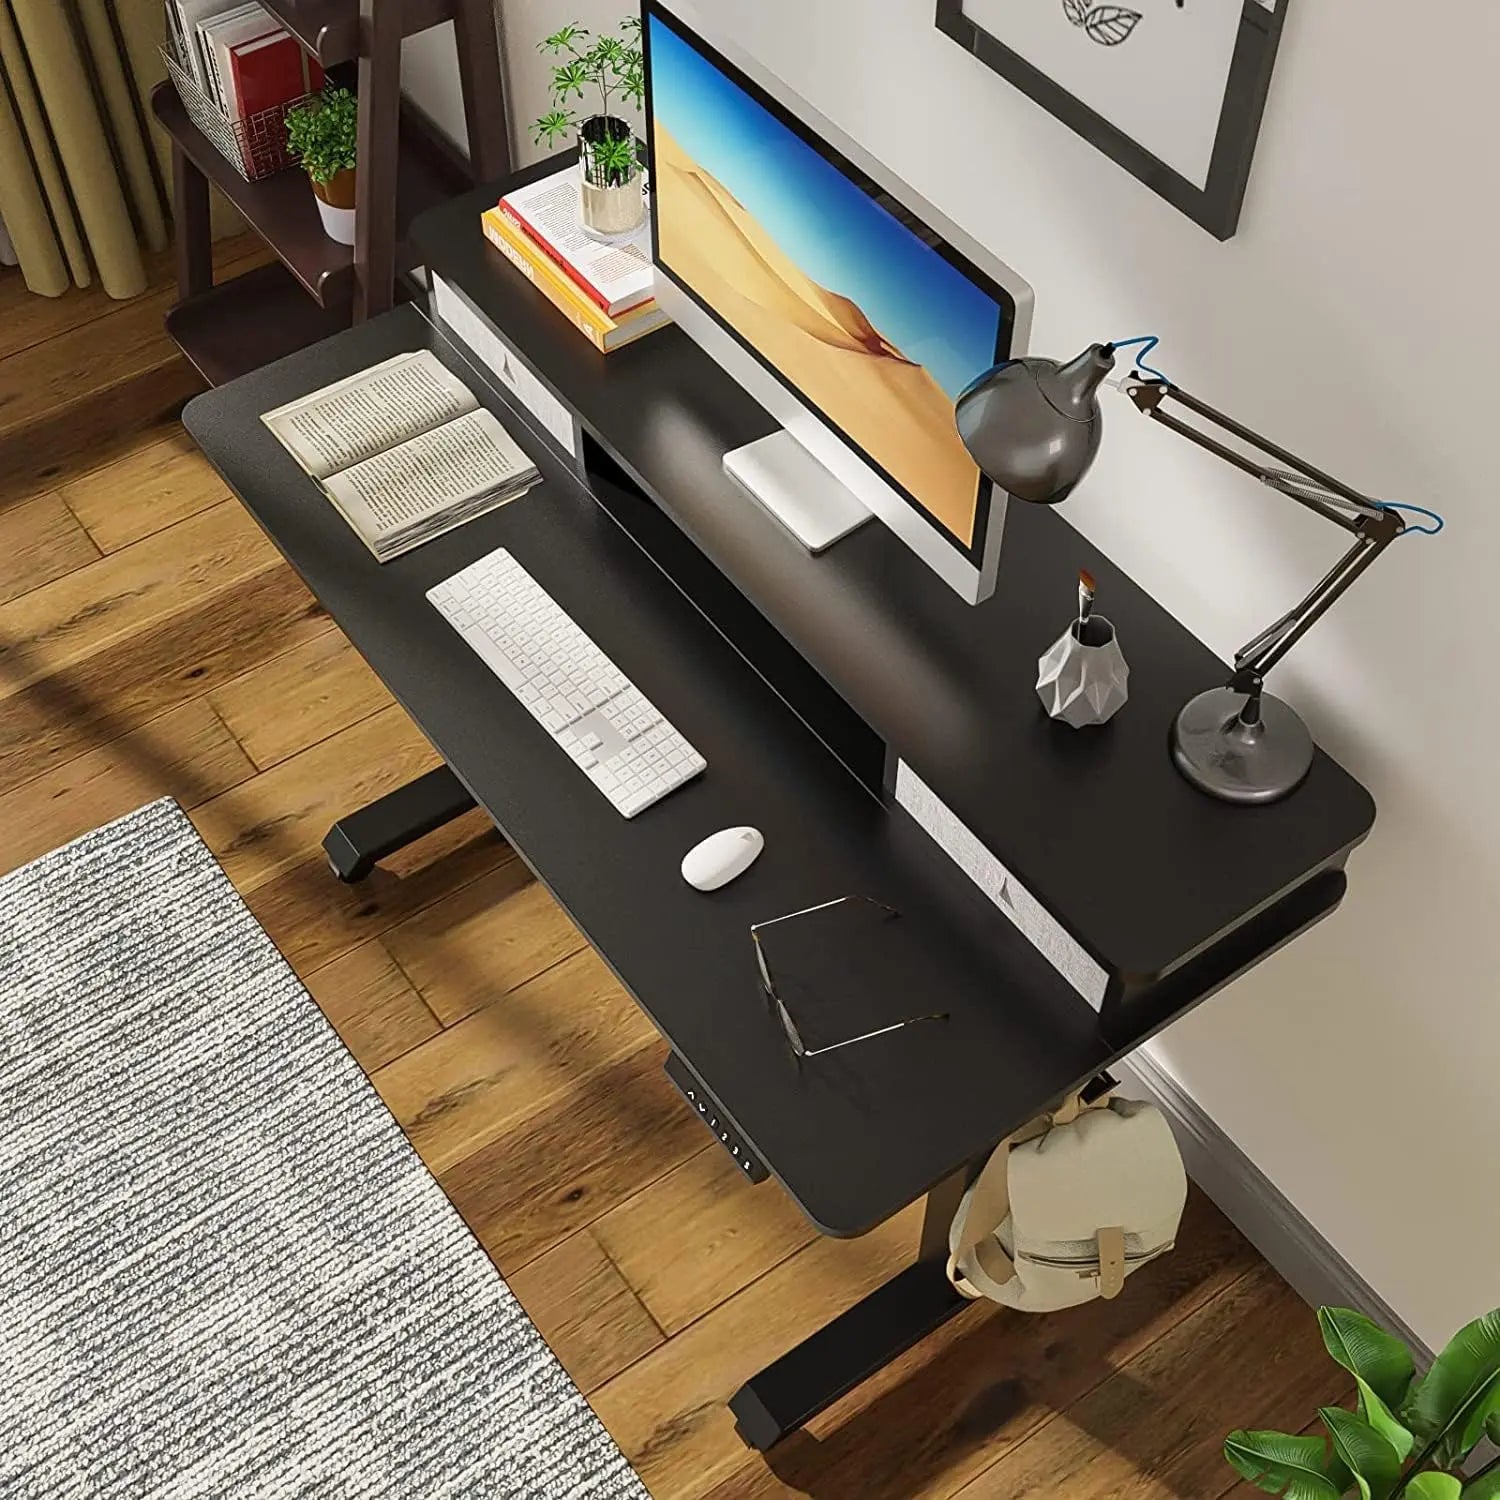 PUTORSEN Height Adjustable Electric Standing Desk with Two Drawers PUTORSEN